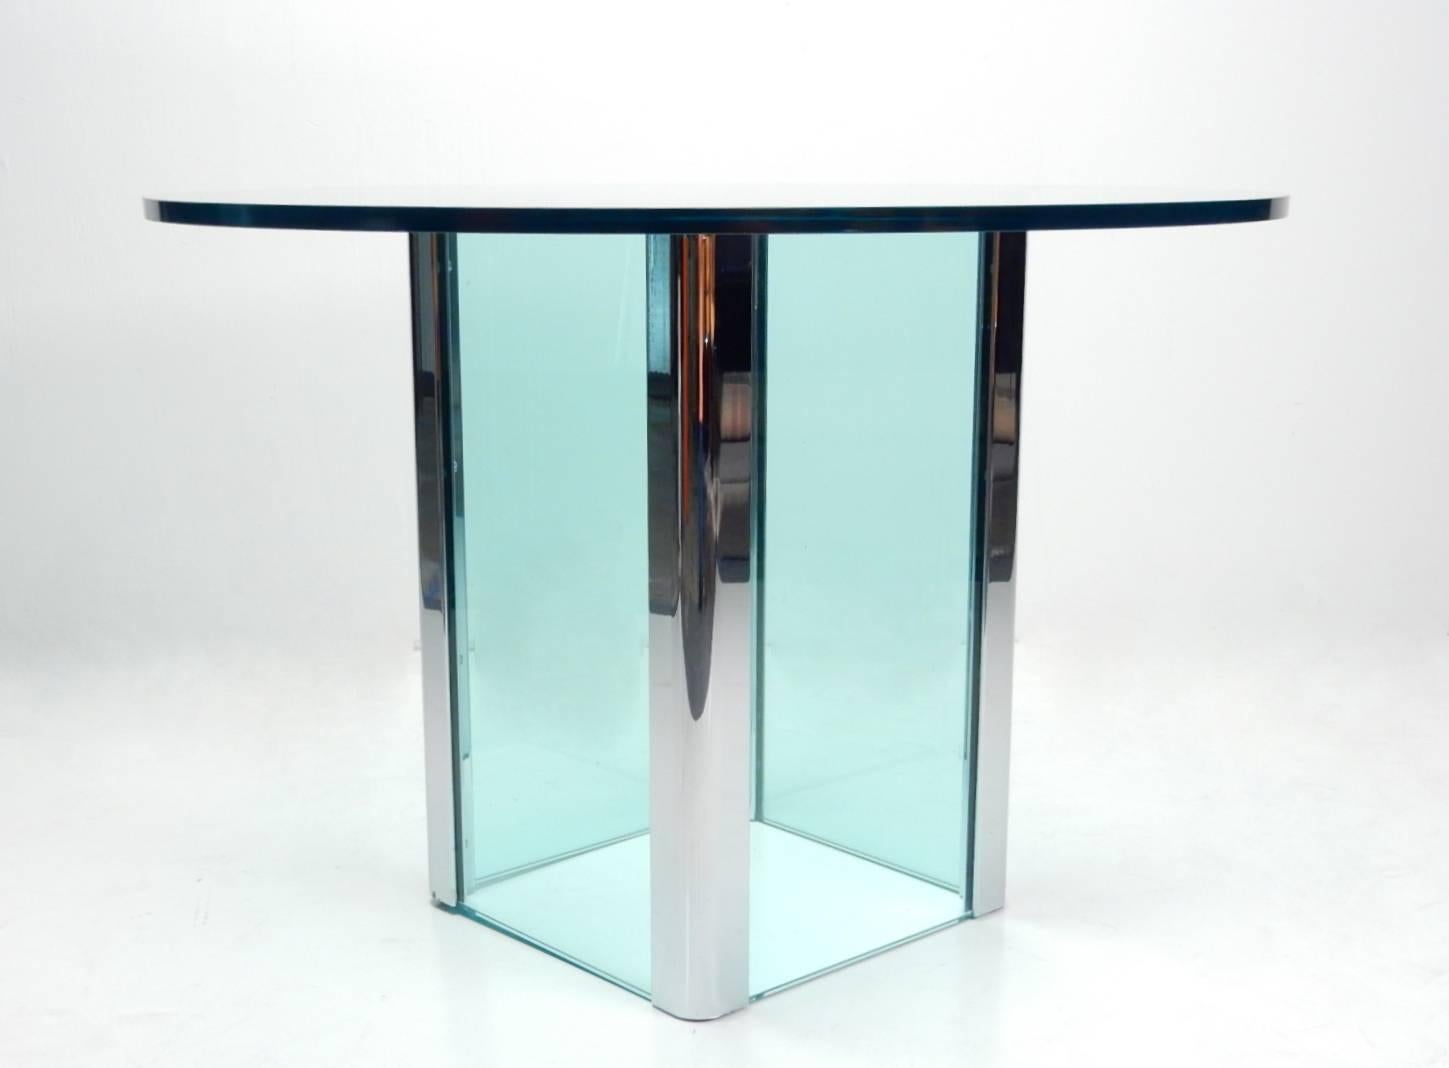 1970er Leon Rosen für Pace Foyertisch aus Glas und Chrom.
Dicke Glasfußseiten mit verchromten Stahlecken.
Passend dazu eine dicke runde Glasplatte. Wunderschöne Agua-Tönung.